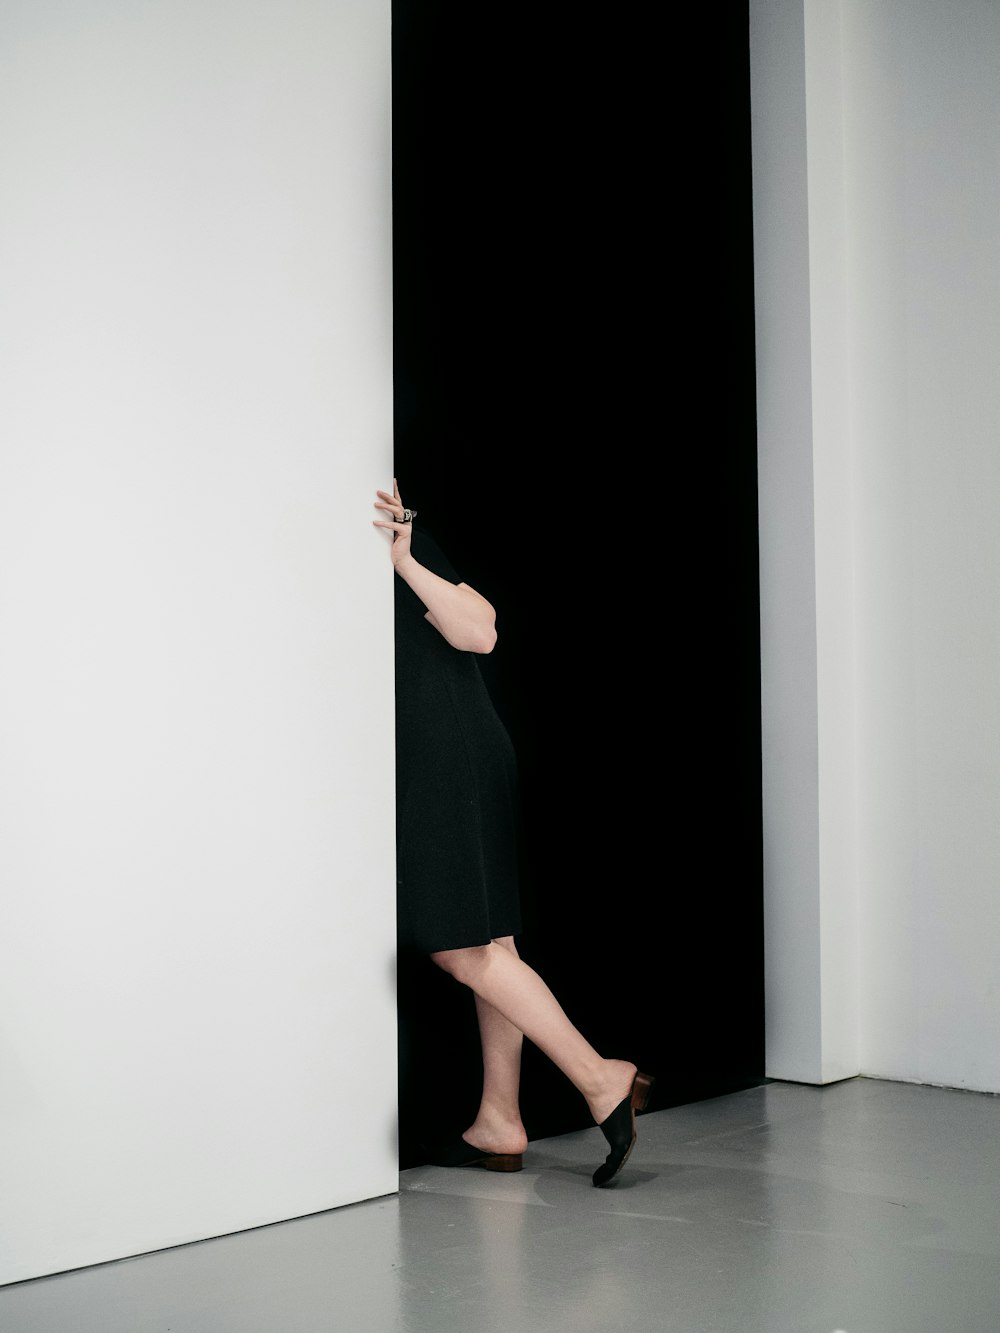 mulher em pé se esgueirando na porta dentro da sala pintada de branco